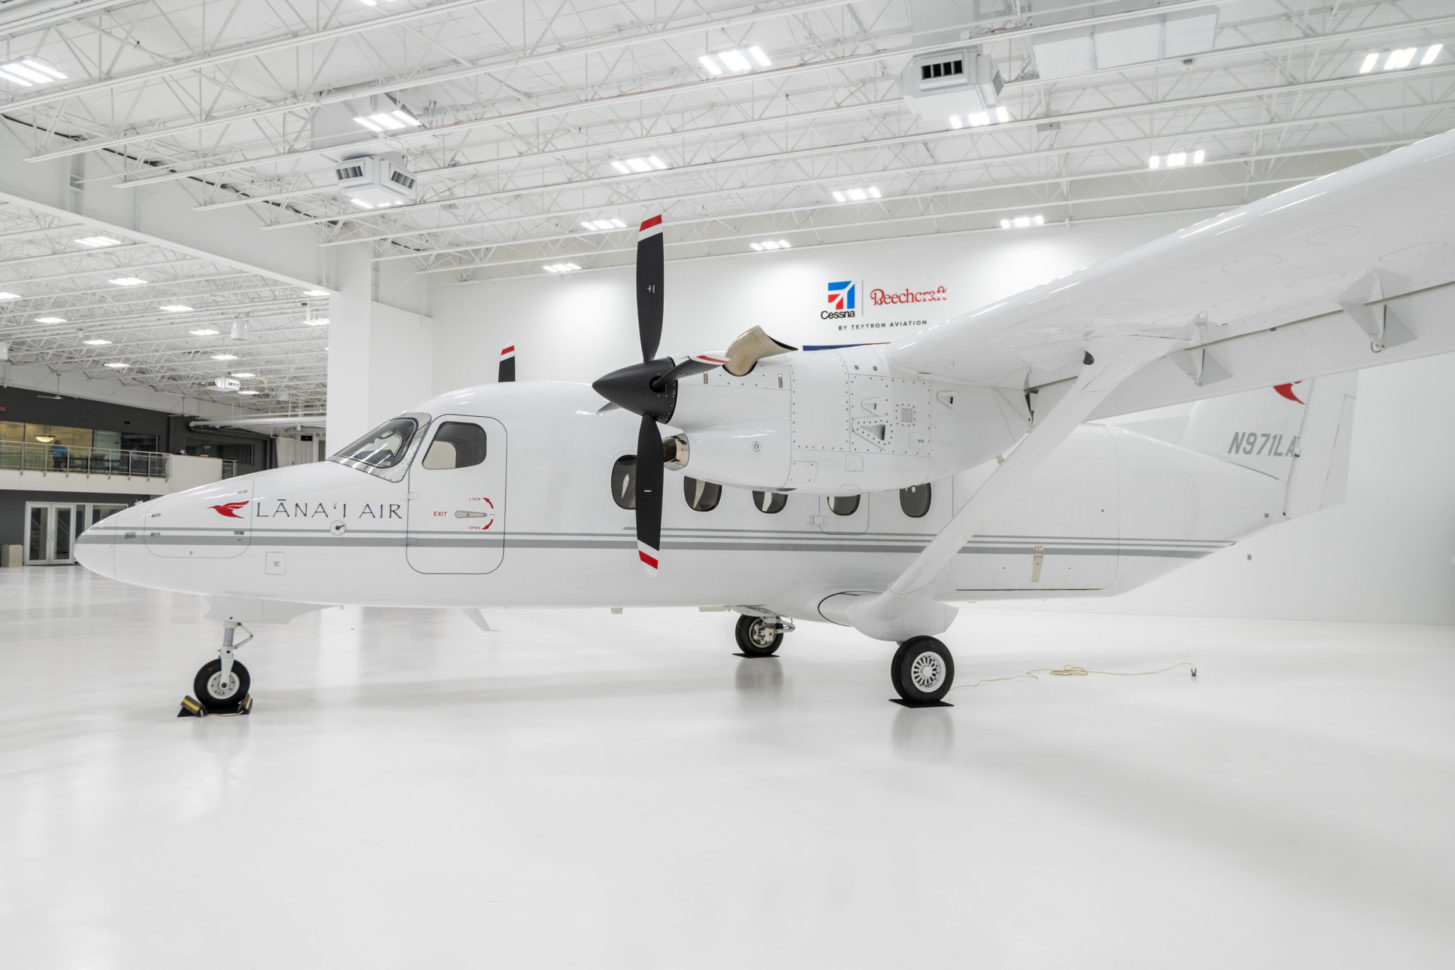 Die Cessna SkyCourier wird von Textron Aviation entwickelt und produziert. Dieses Flugzeug wird im Passagierverkehr eingesetzt.